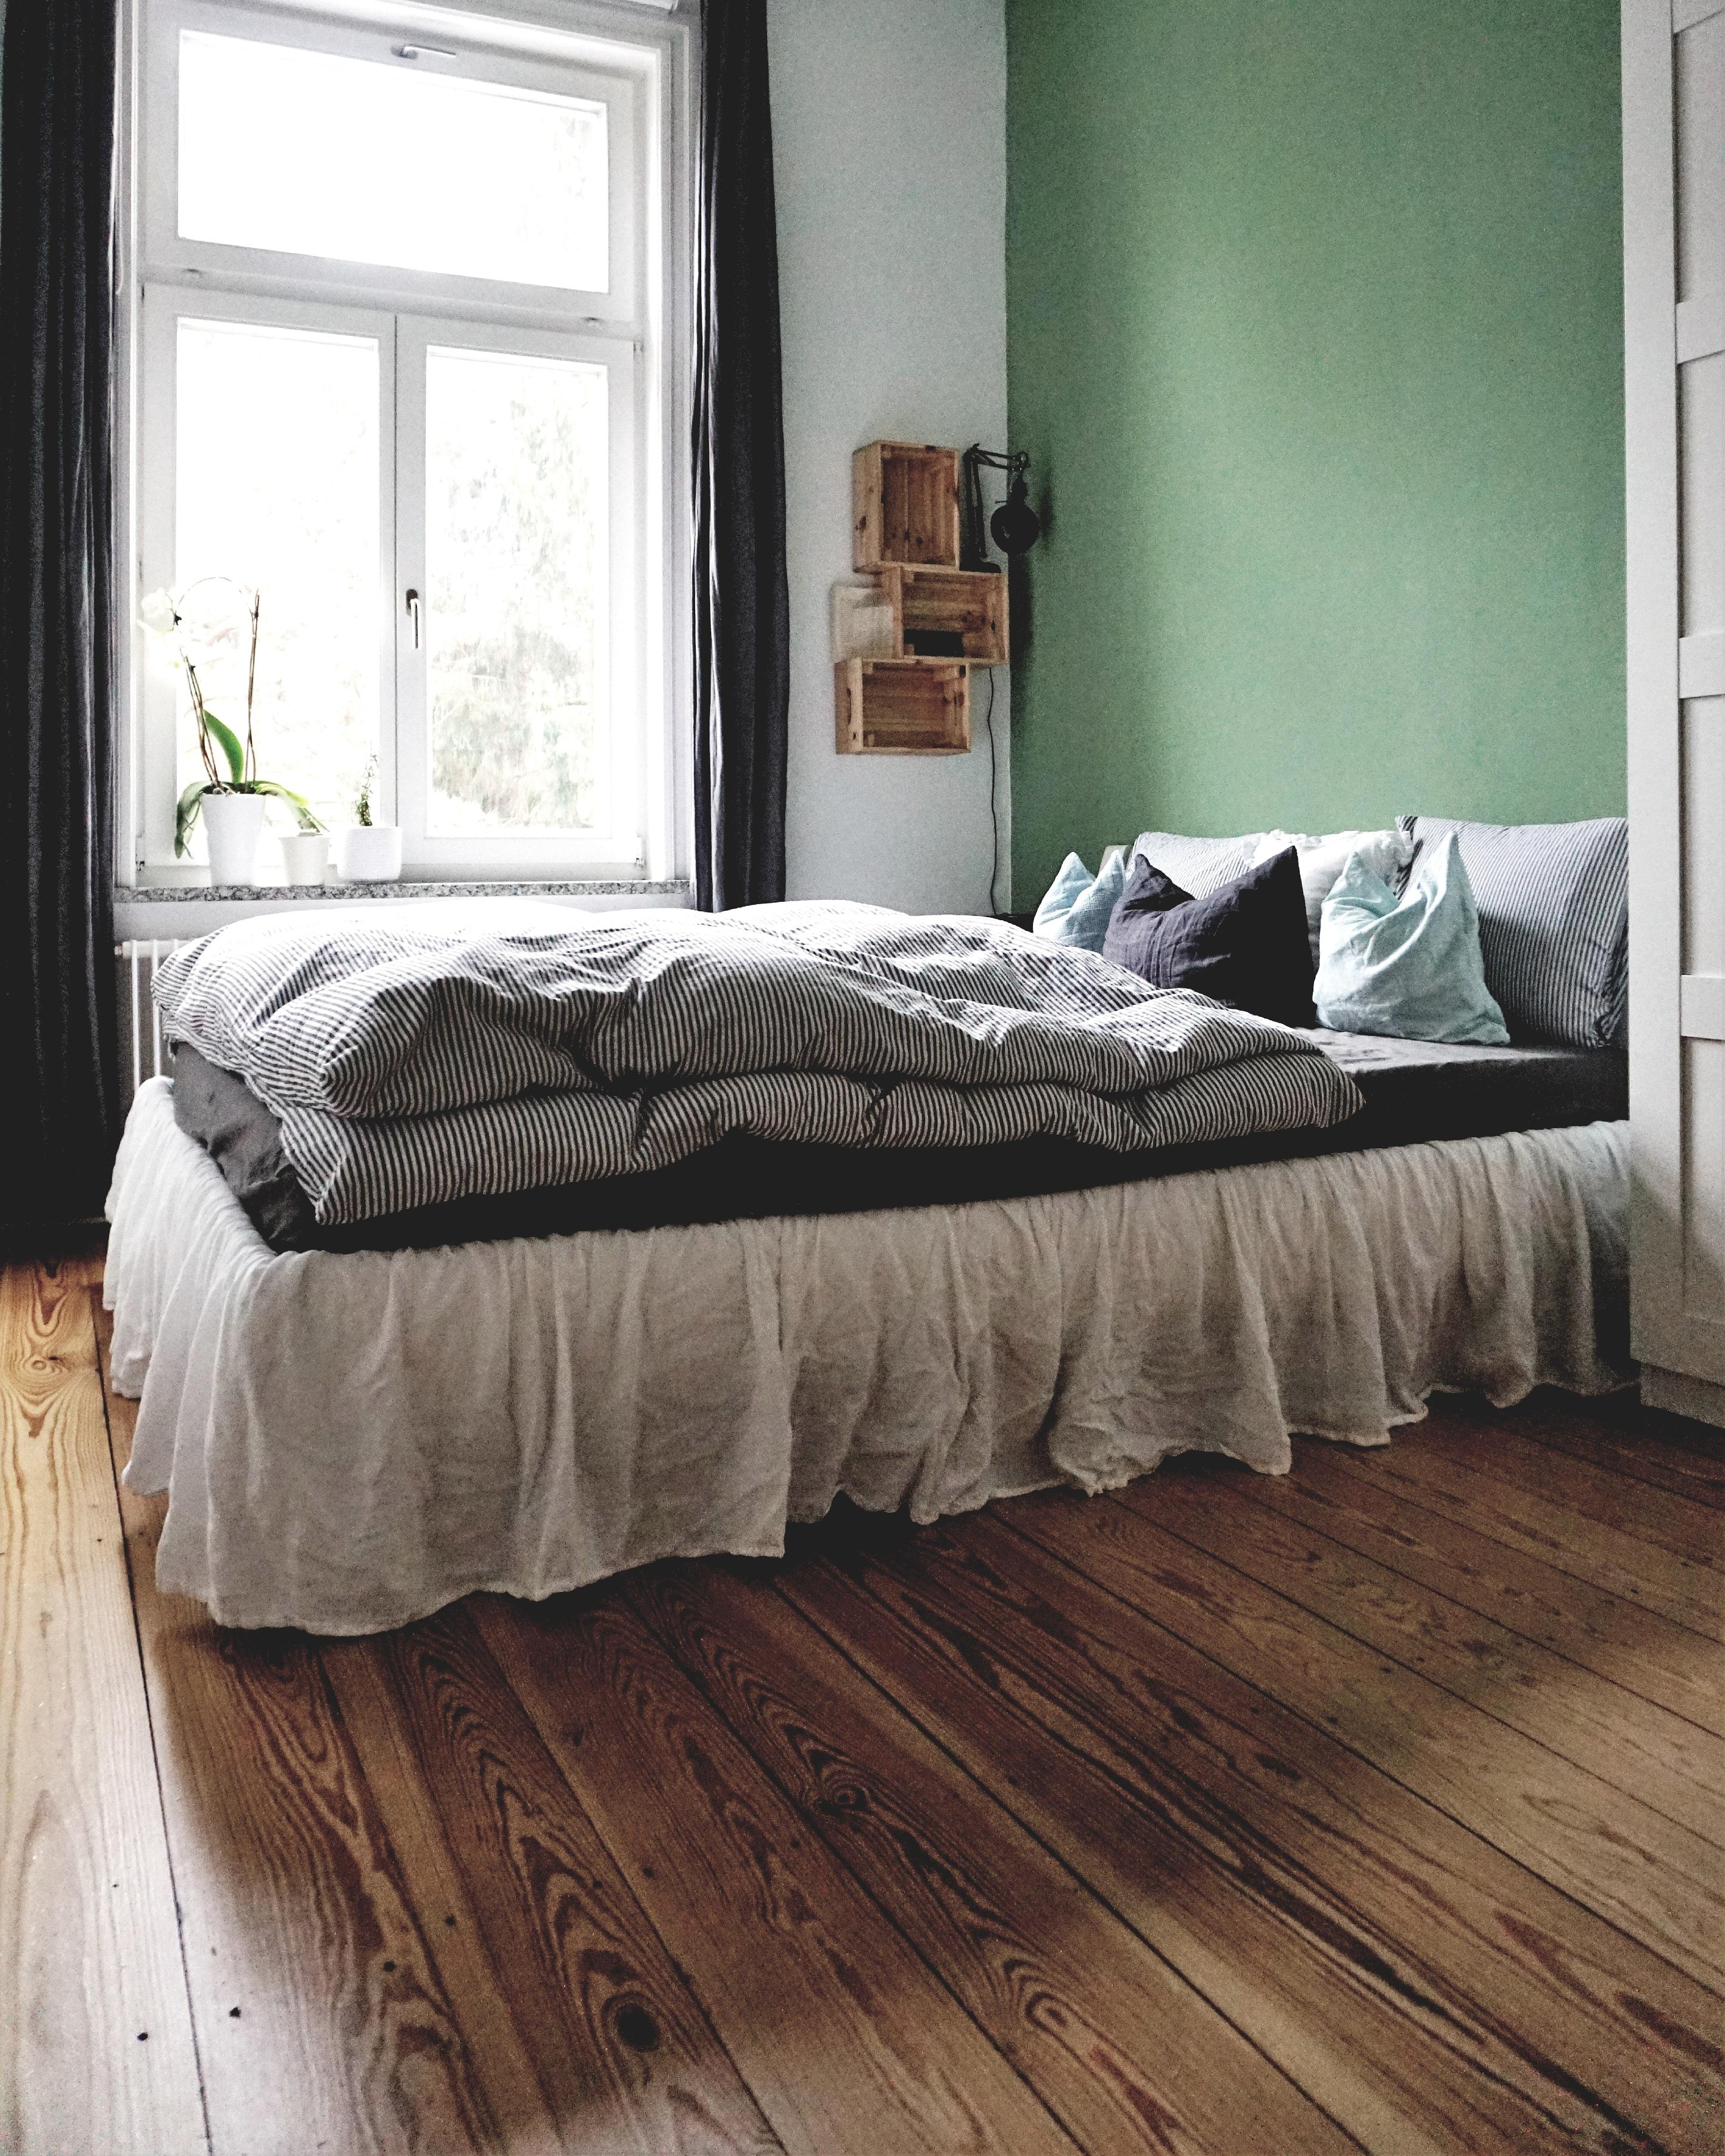 Schlafzimmerblick #Schlafzimmer #Bett #Altbau #Altbauliebe #grüneWand #Regal #Ikeahack 